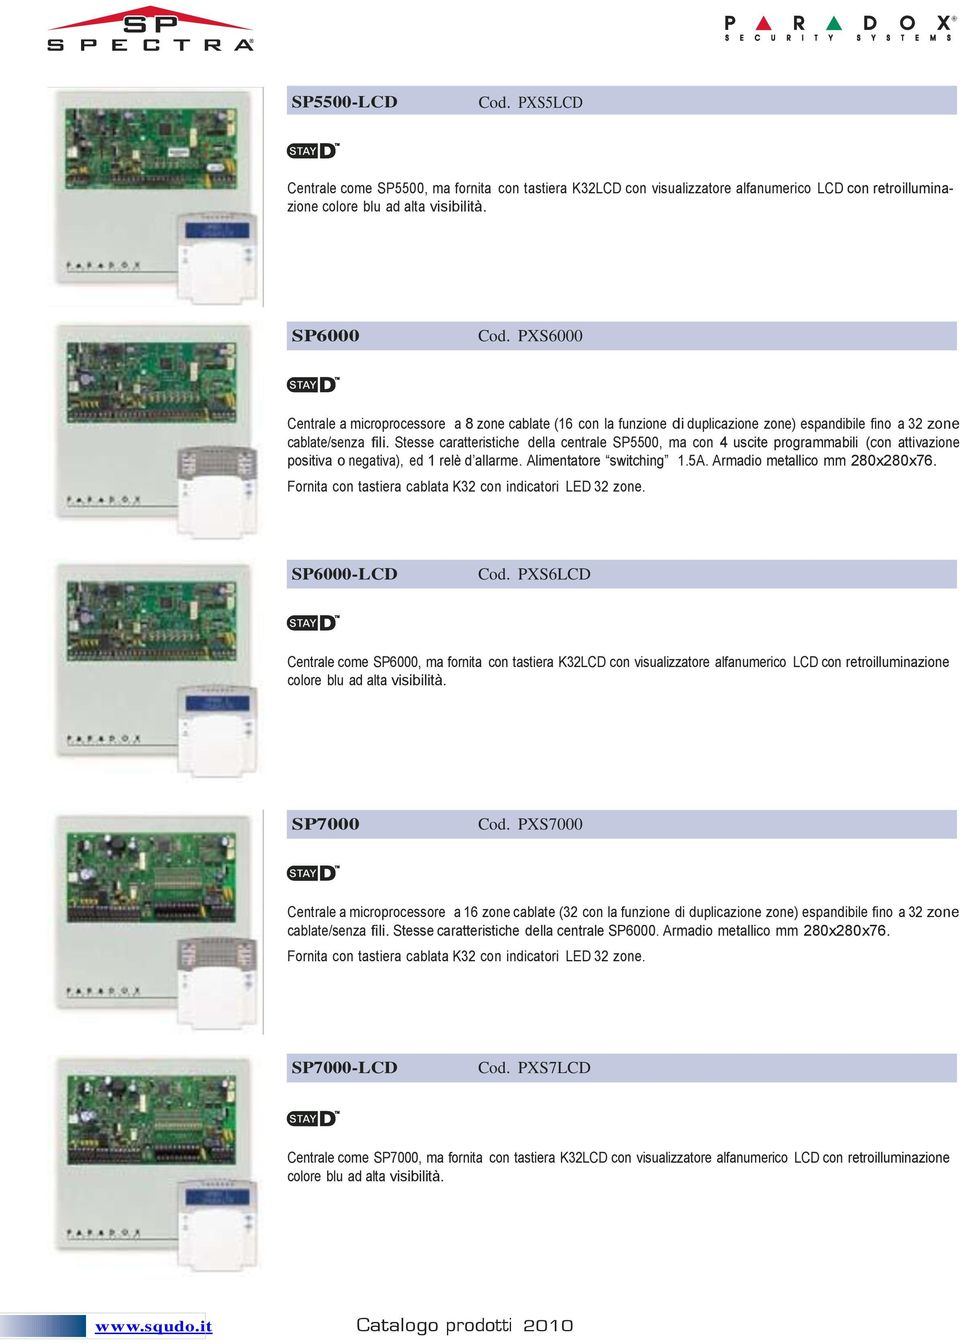 SP6000 Cod. PXS6000 Minimo 30 pezzi (in unico ordine) cd. 290,00 Centrale a microprocessore a 8 zone cablate (16 con la funzione di duplicazione zone) espandibile fino a 32 zone cablate/senza fili.